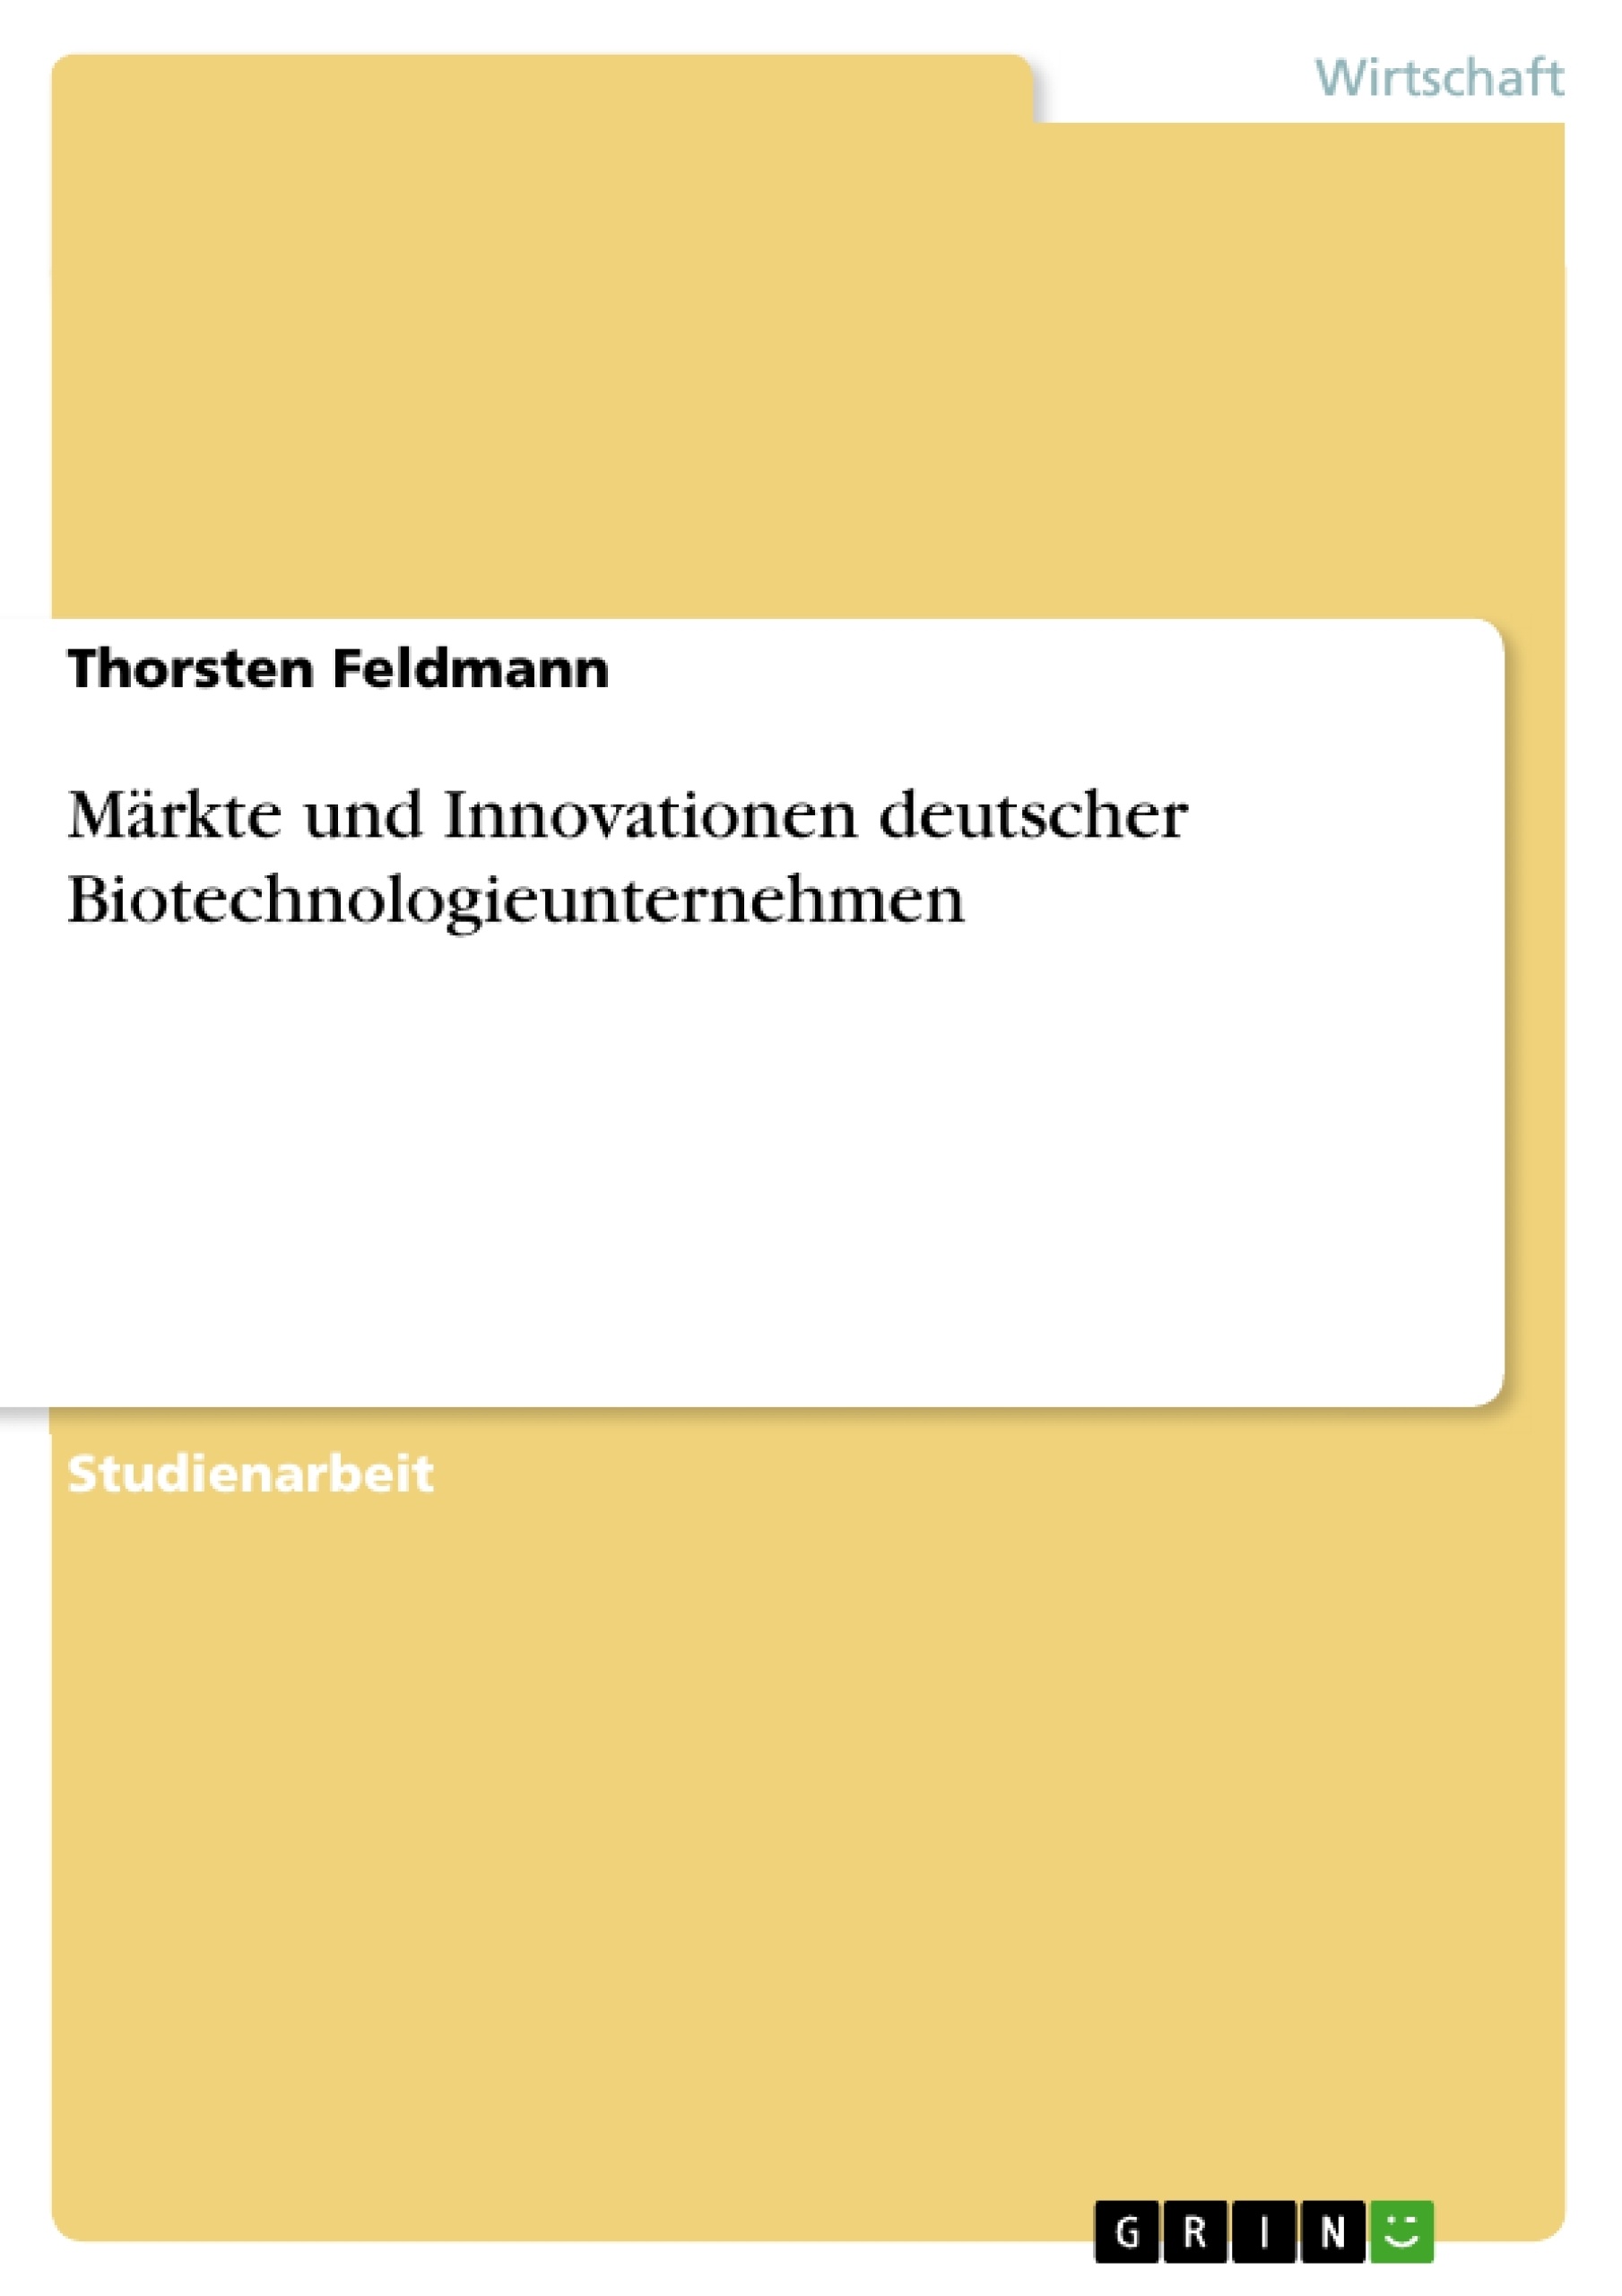 Title: Märkte und Innovationen deutscher Biotechnologieunternehmen